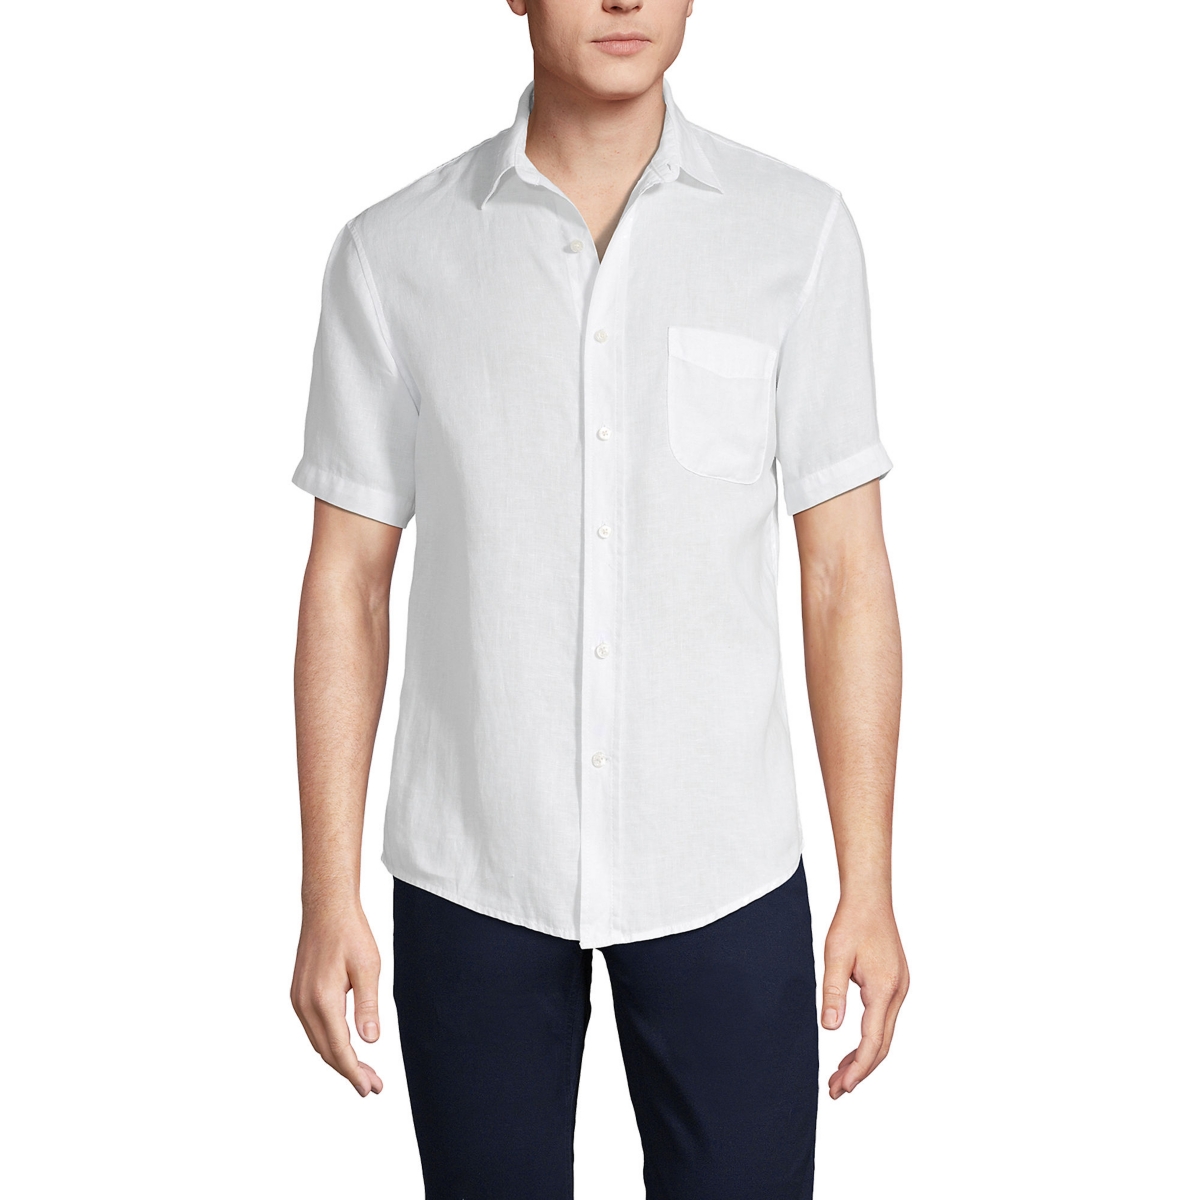 Men's Traditional Fit Short Sleeve Linen Shirt - Desert tan multi stripe